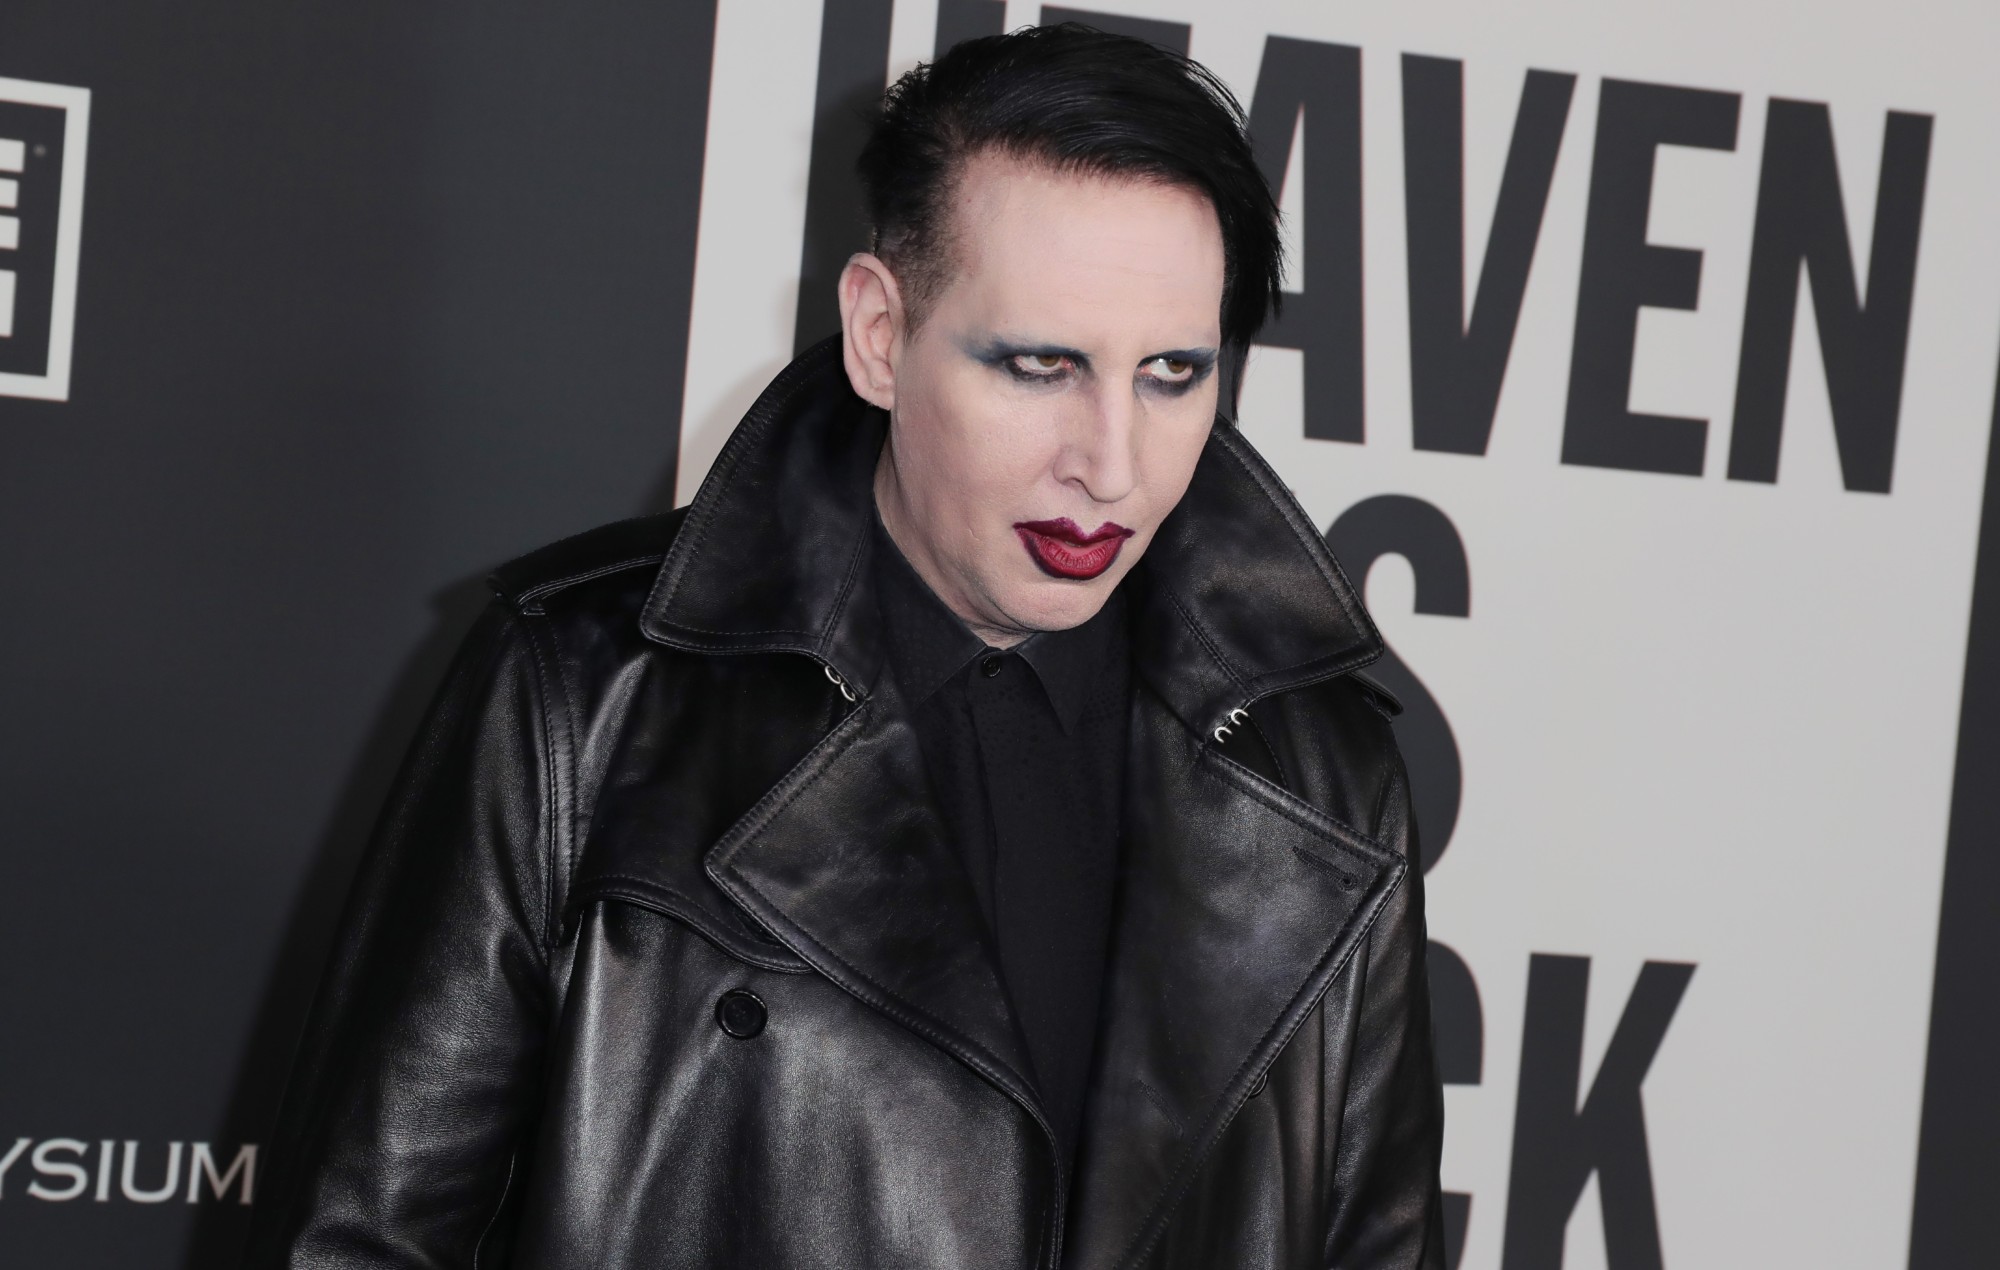 Aumentan las cifras de streaming de Marilyn Manson por su catálogo anterior a pesar de las acusaciones de abuso